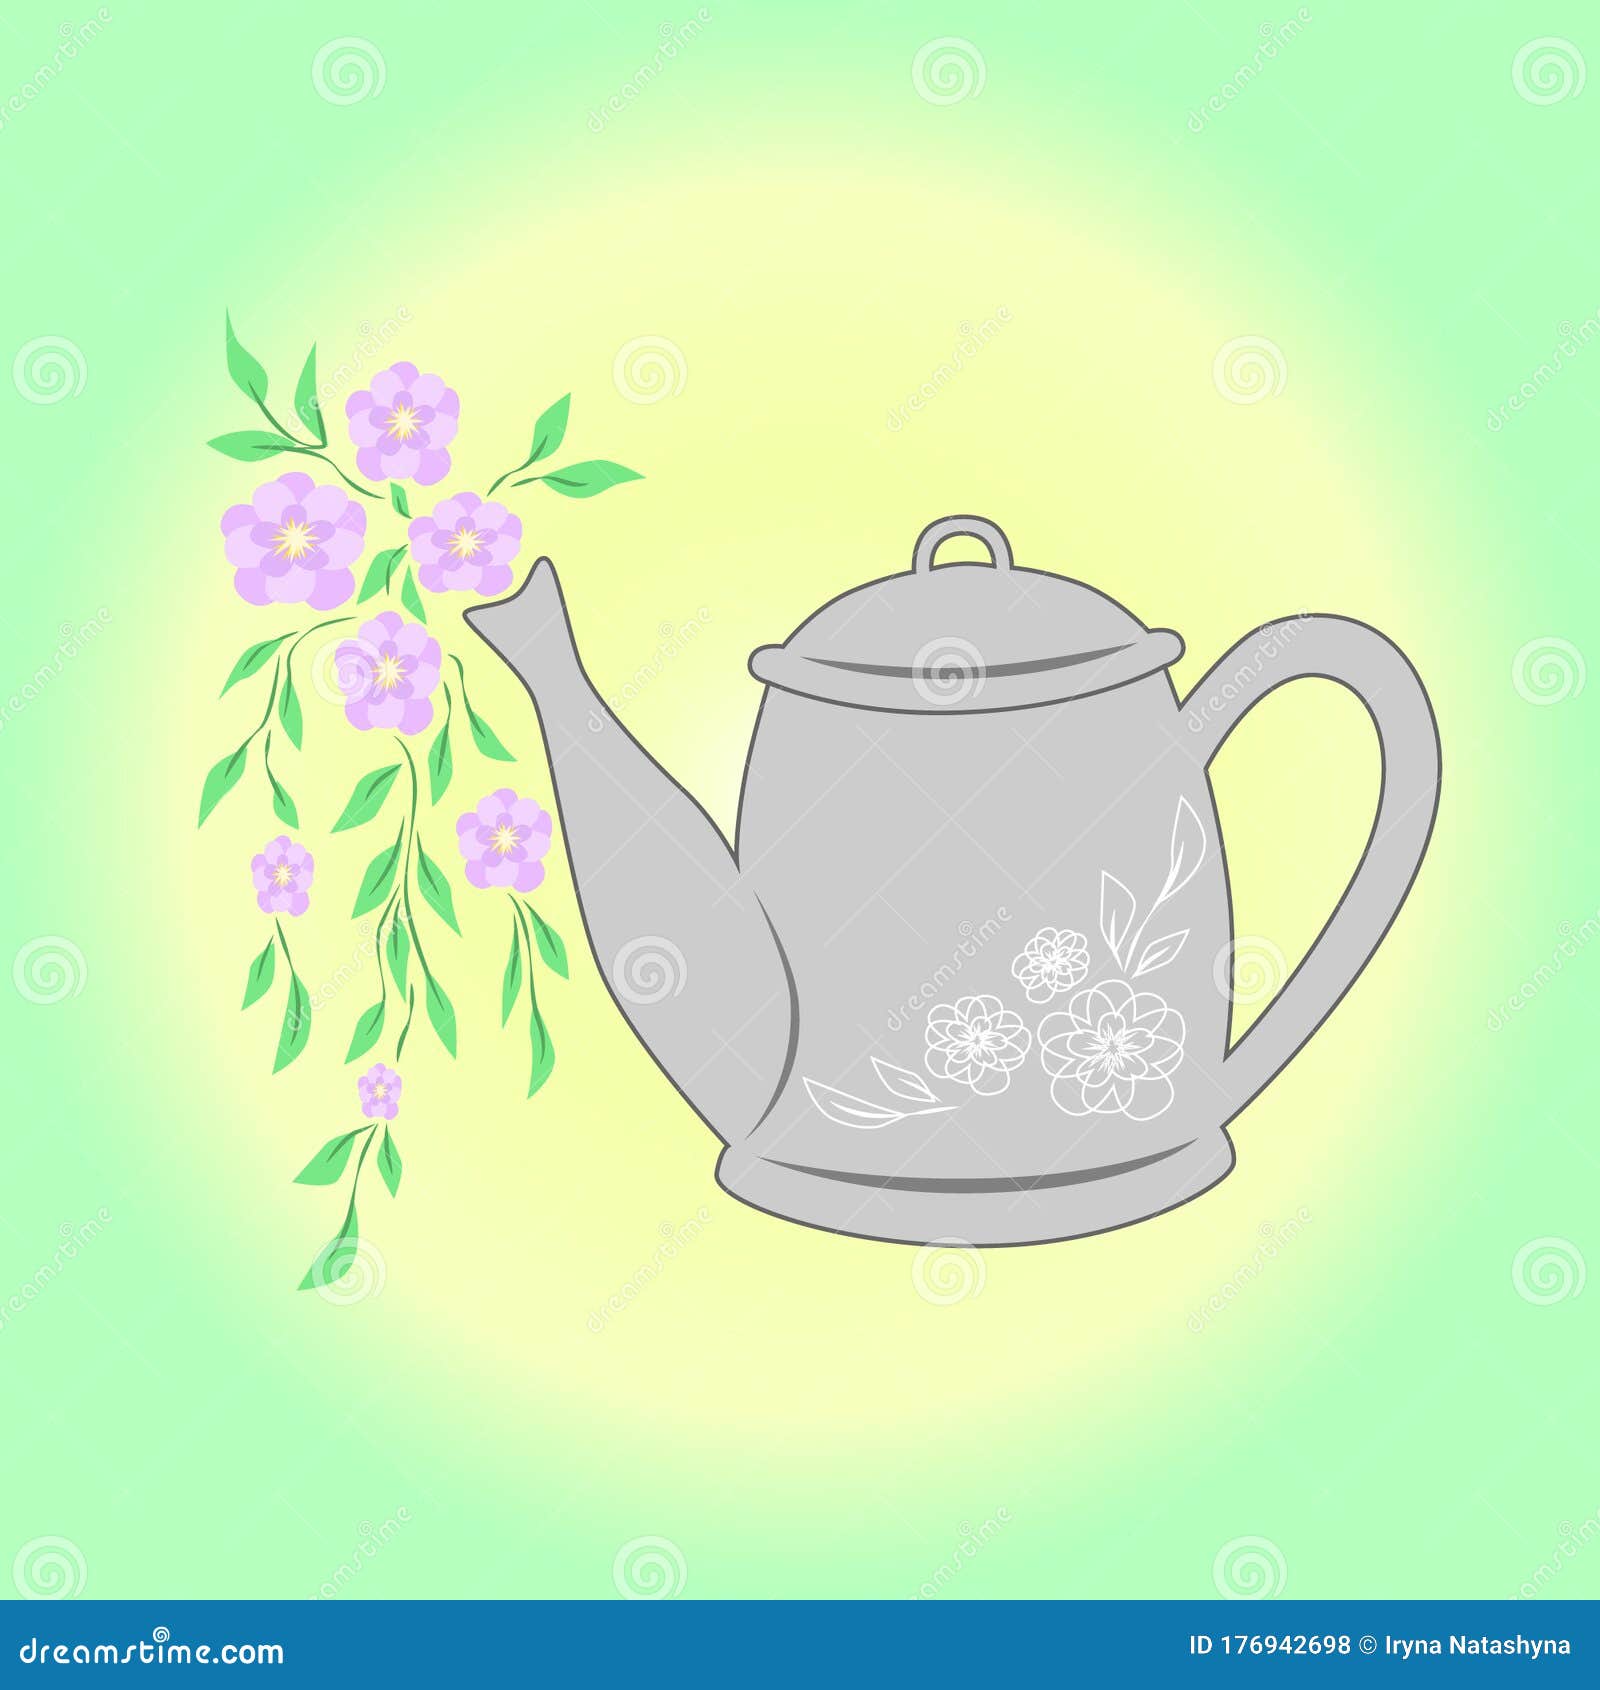 Unique Sketch Drawing Plants Teapot for Kids